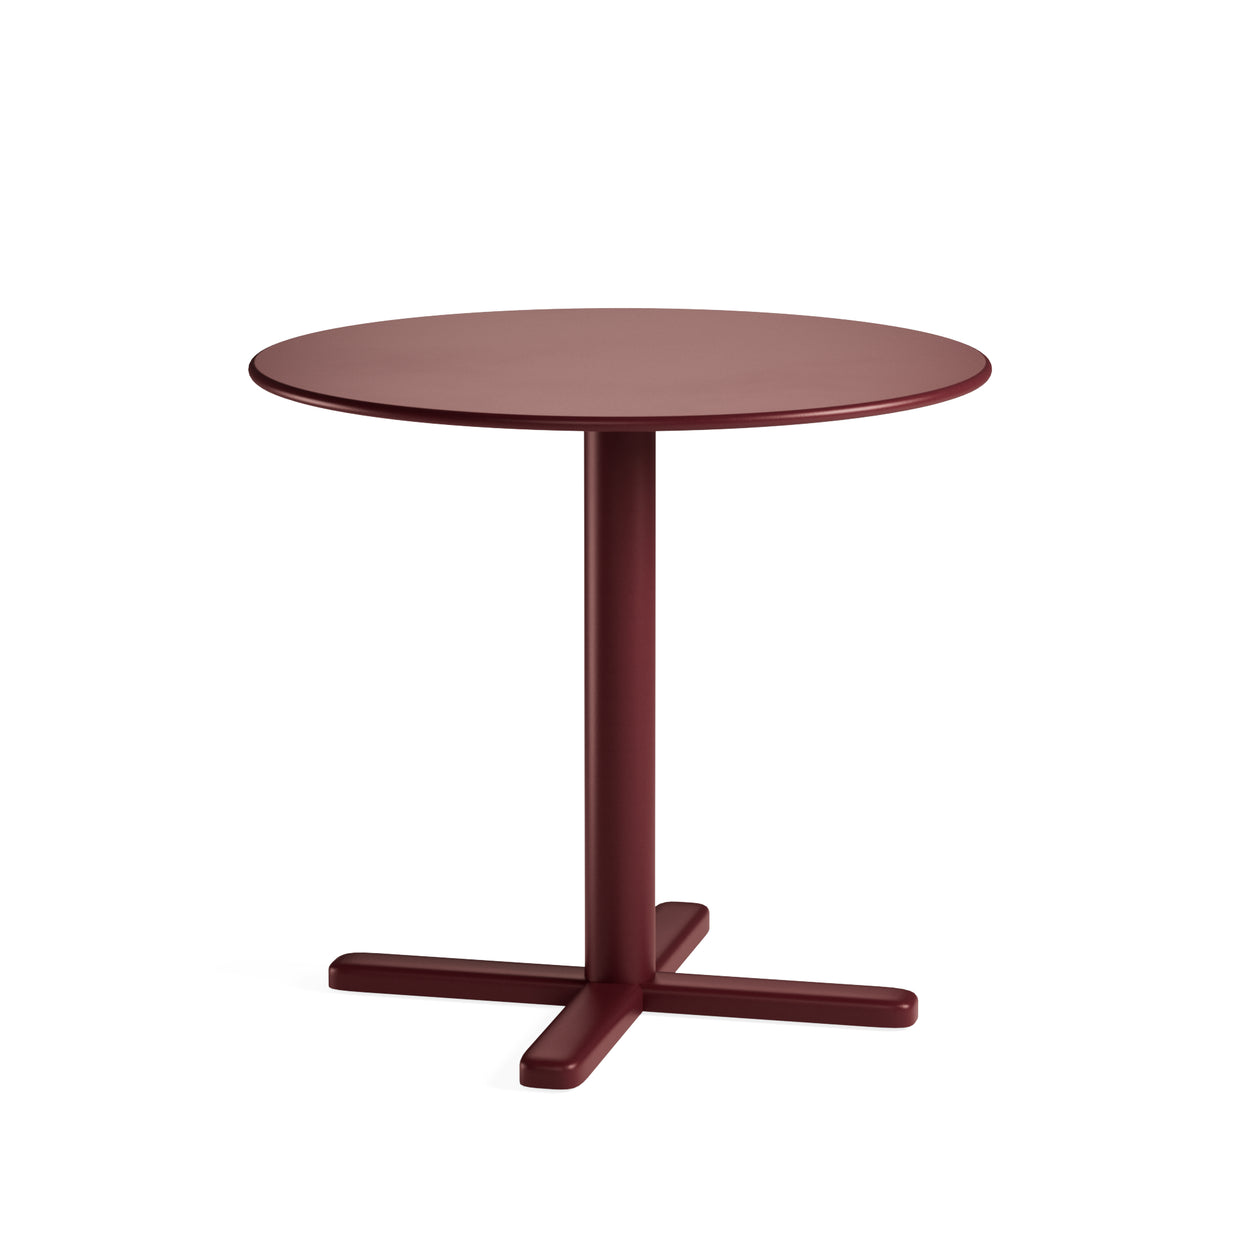 Darwin opklapbare ronde tafel - 2 sizes